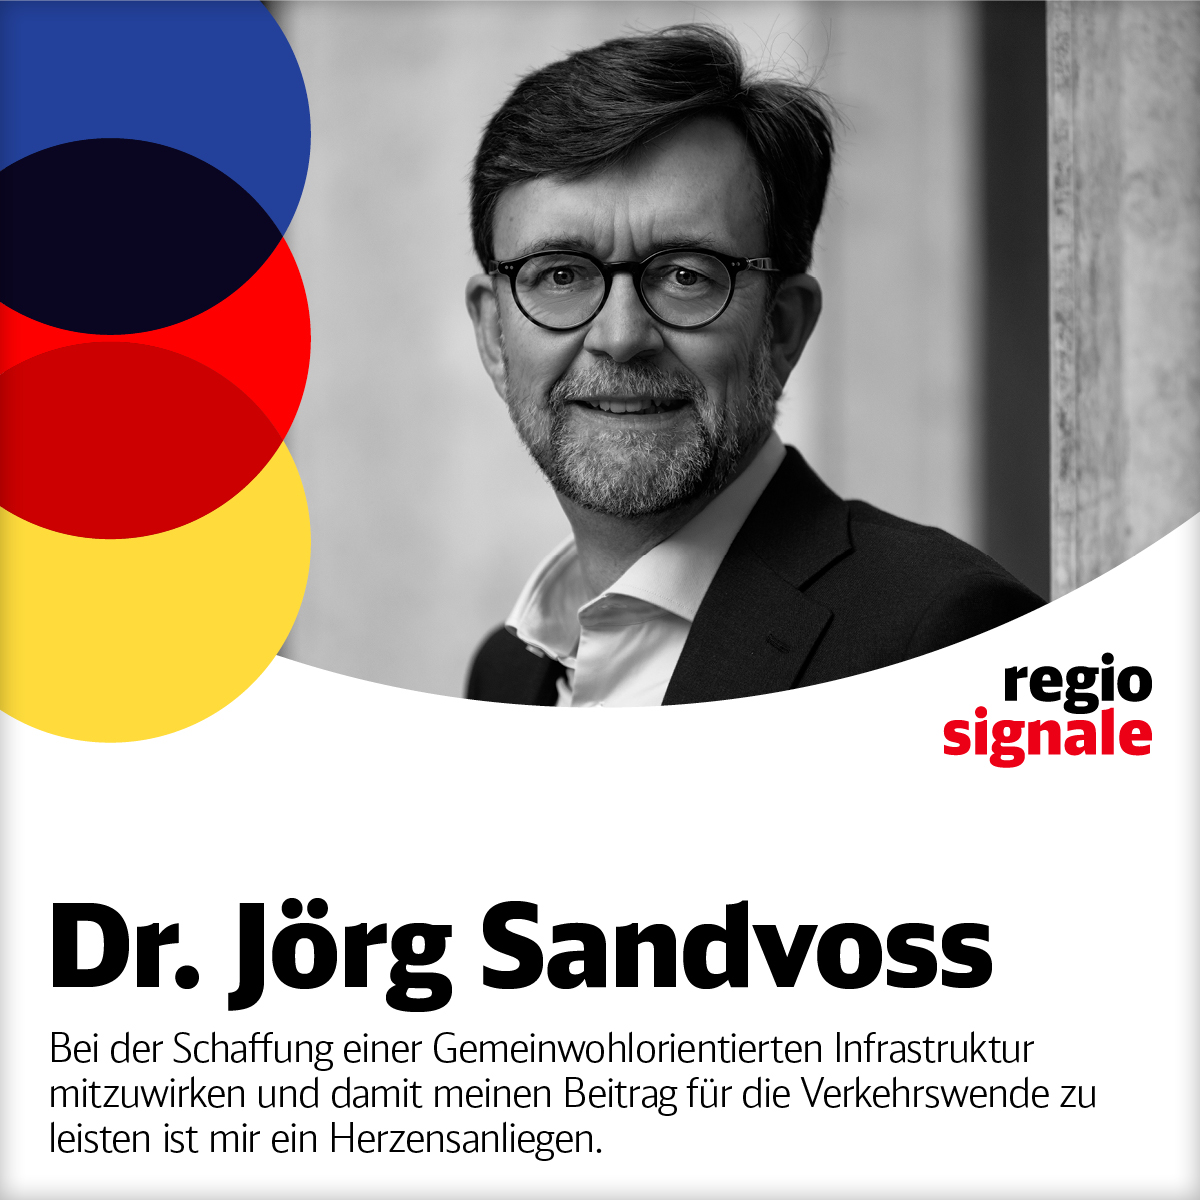 Dr. Jörg Sandvoß